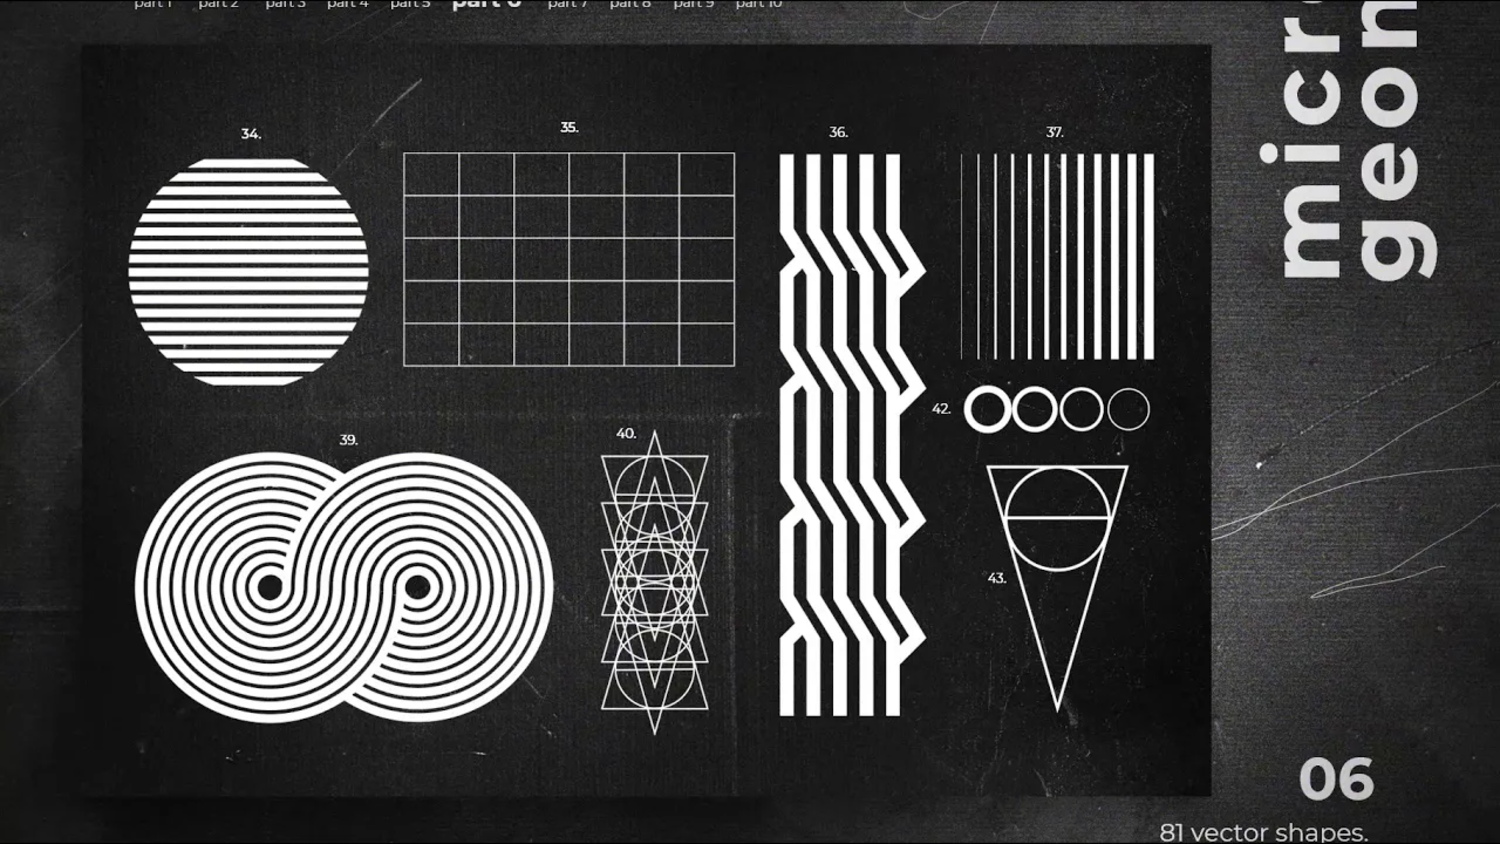 4288 未来抽象潮流科技线条几何海报设计装饰图形矢量素材合集 Shapes Backgrounds Textures@GOOODME.COM